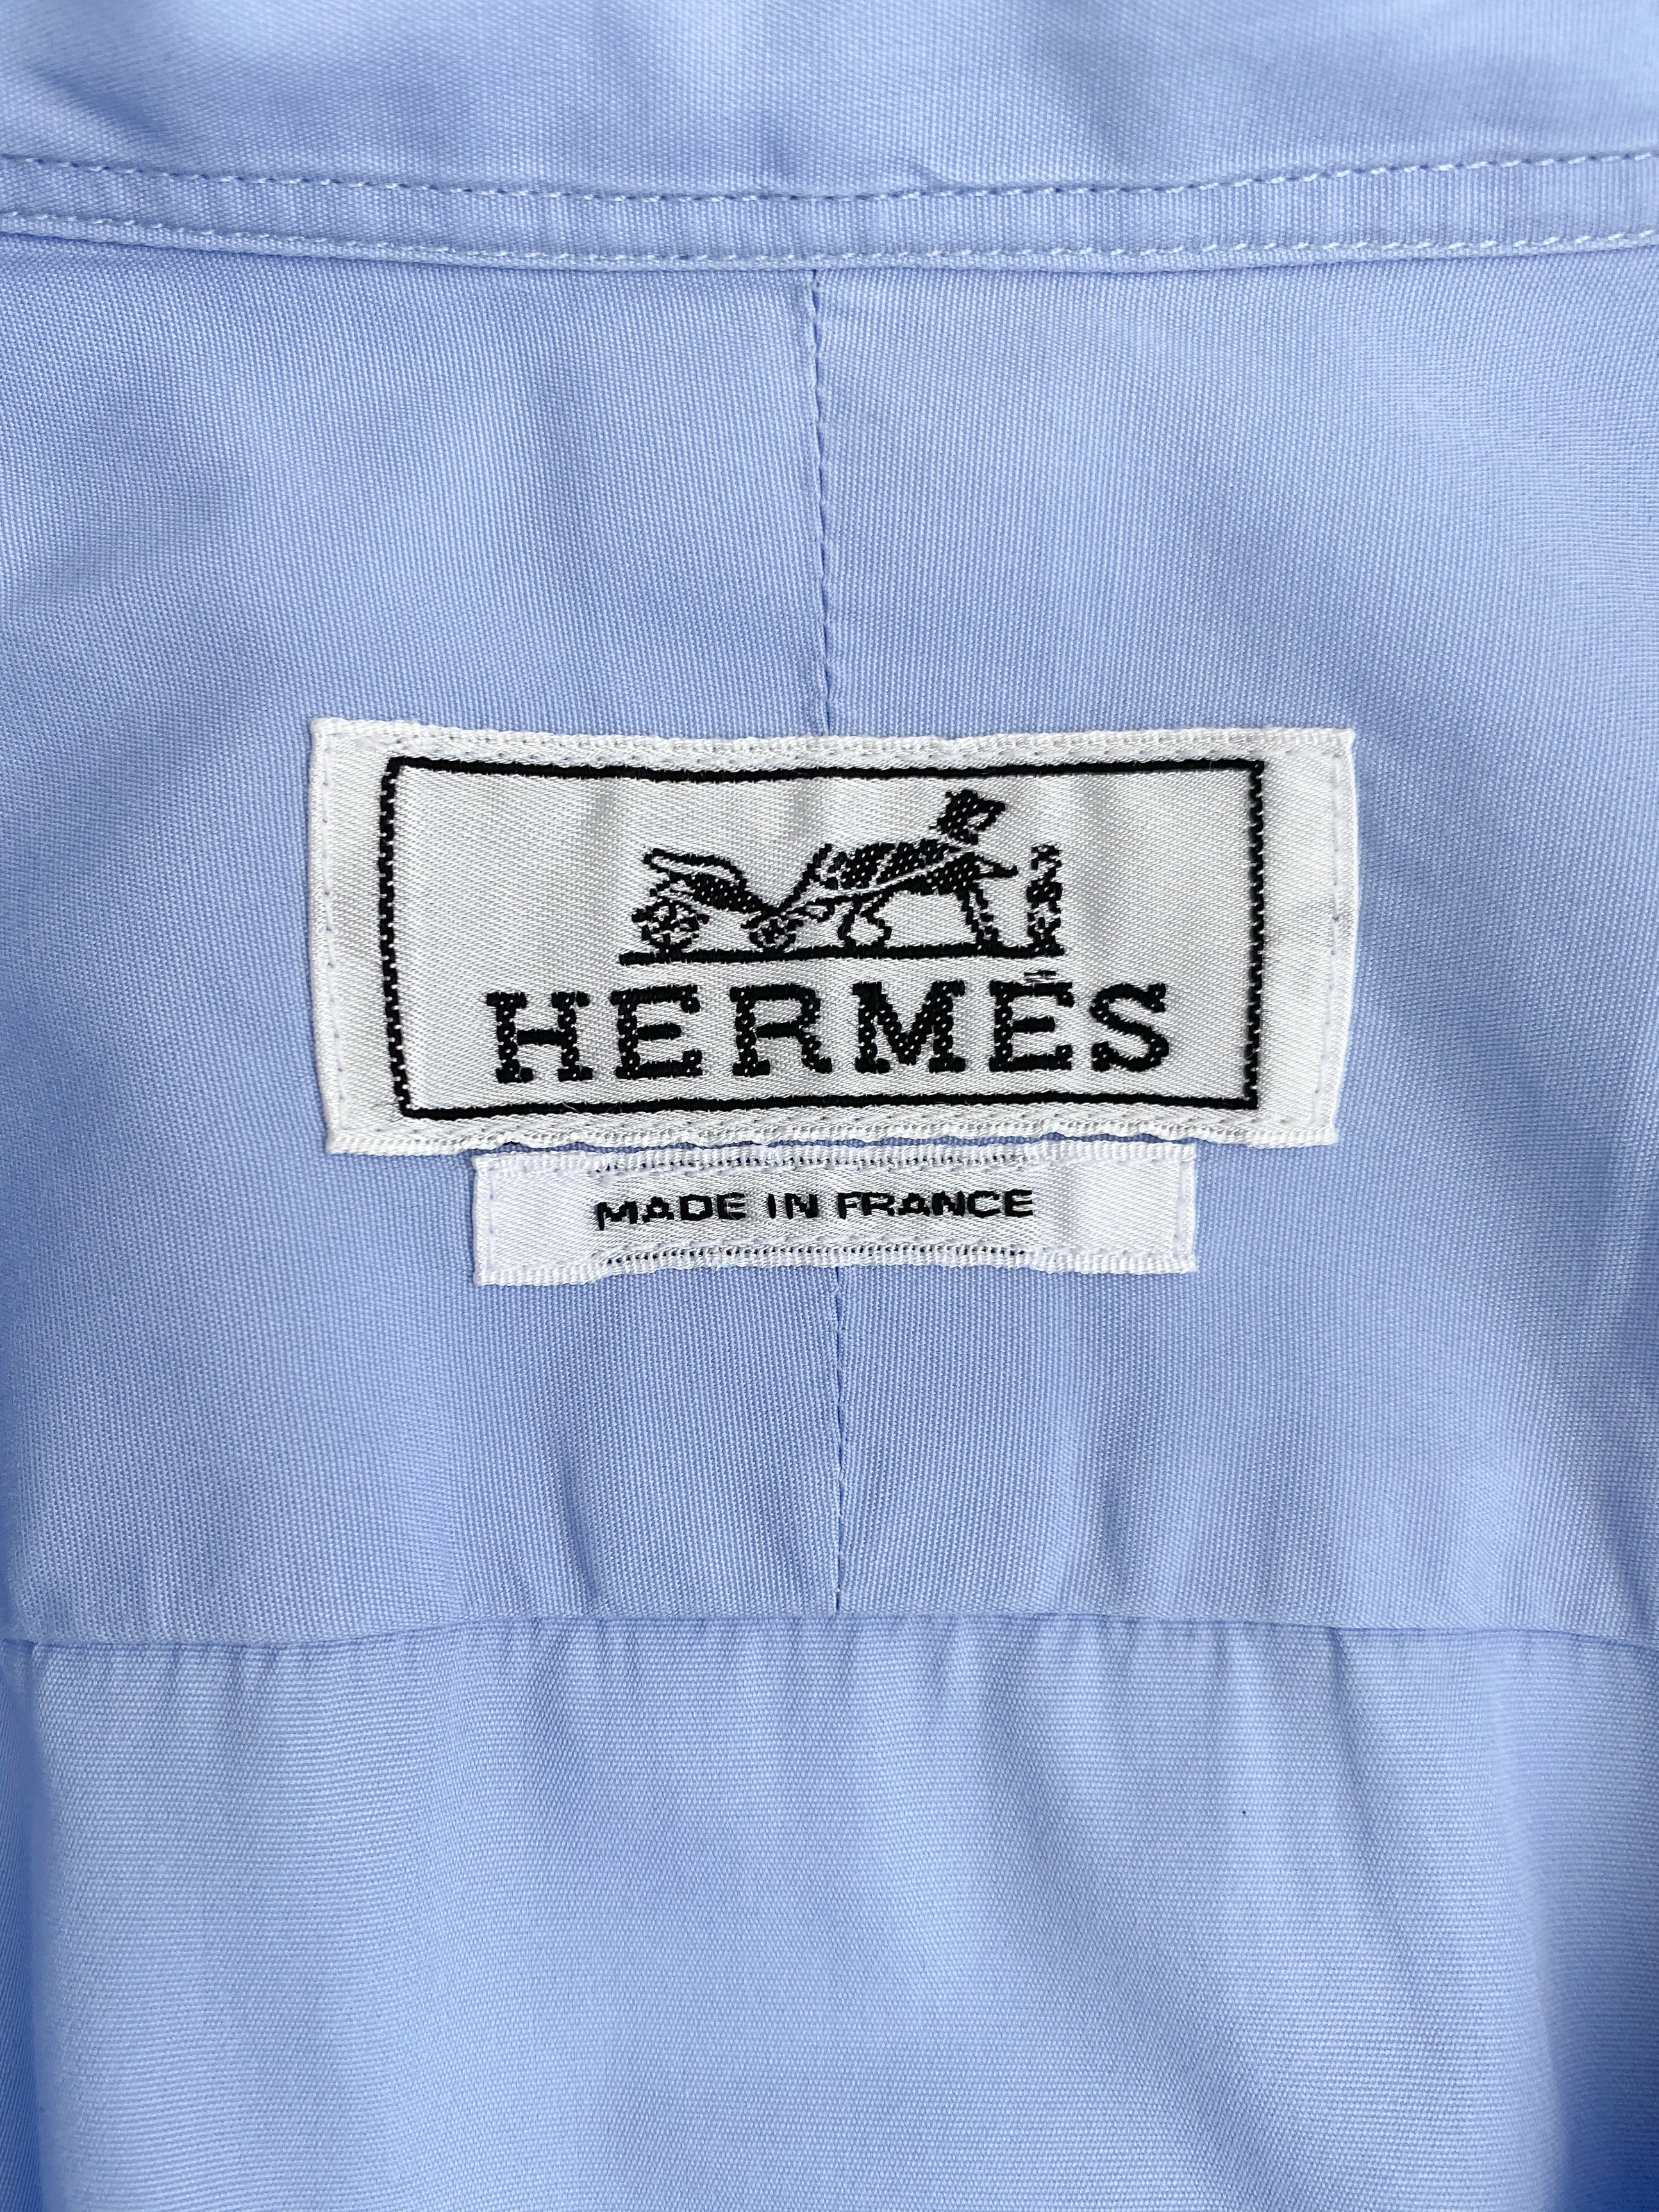 90's Hermès cotton shirt